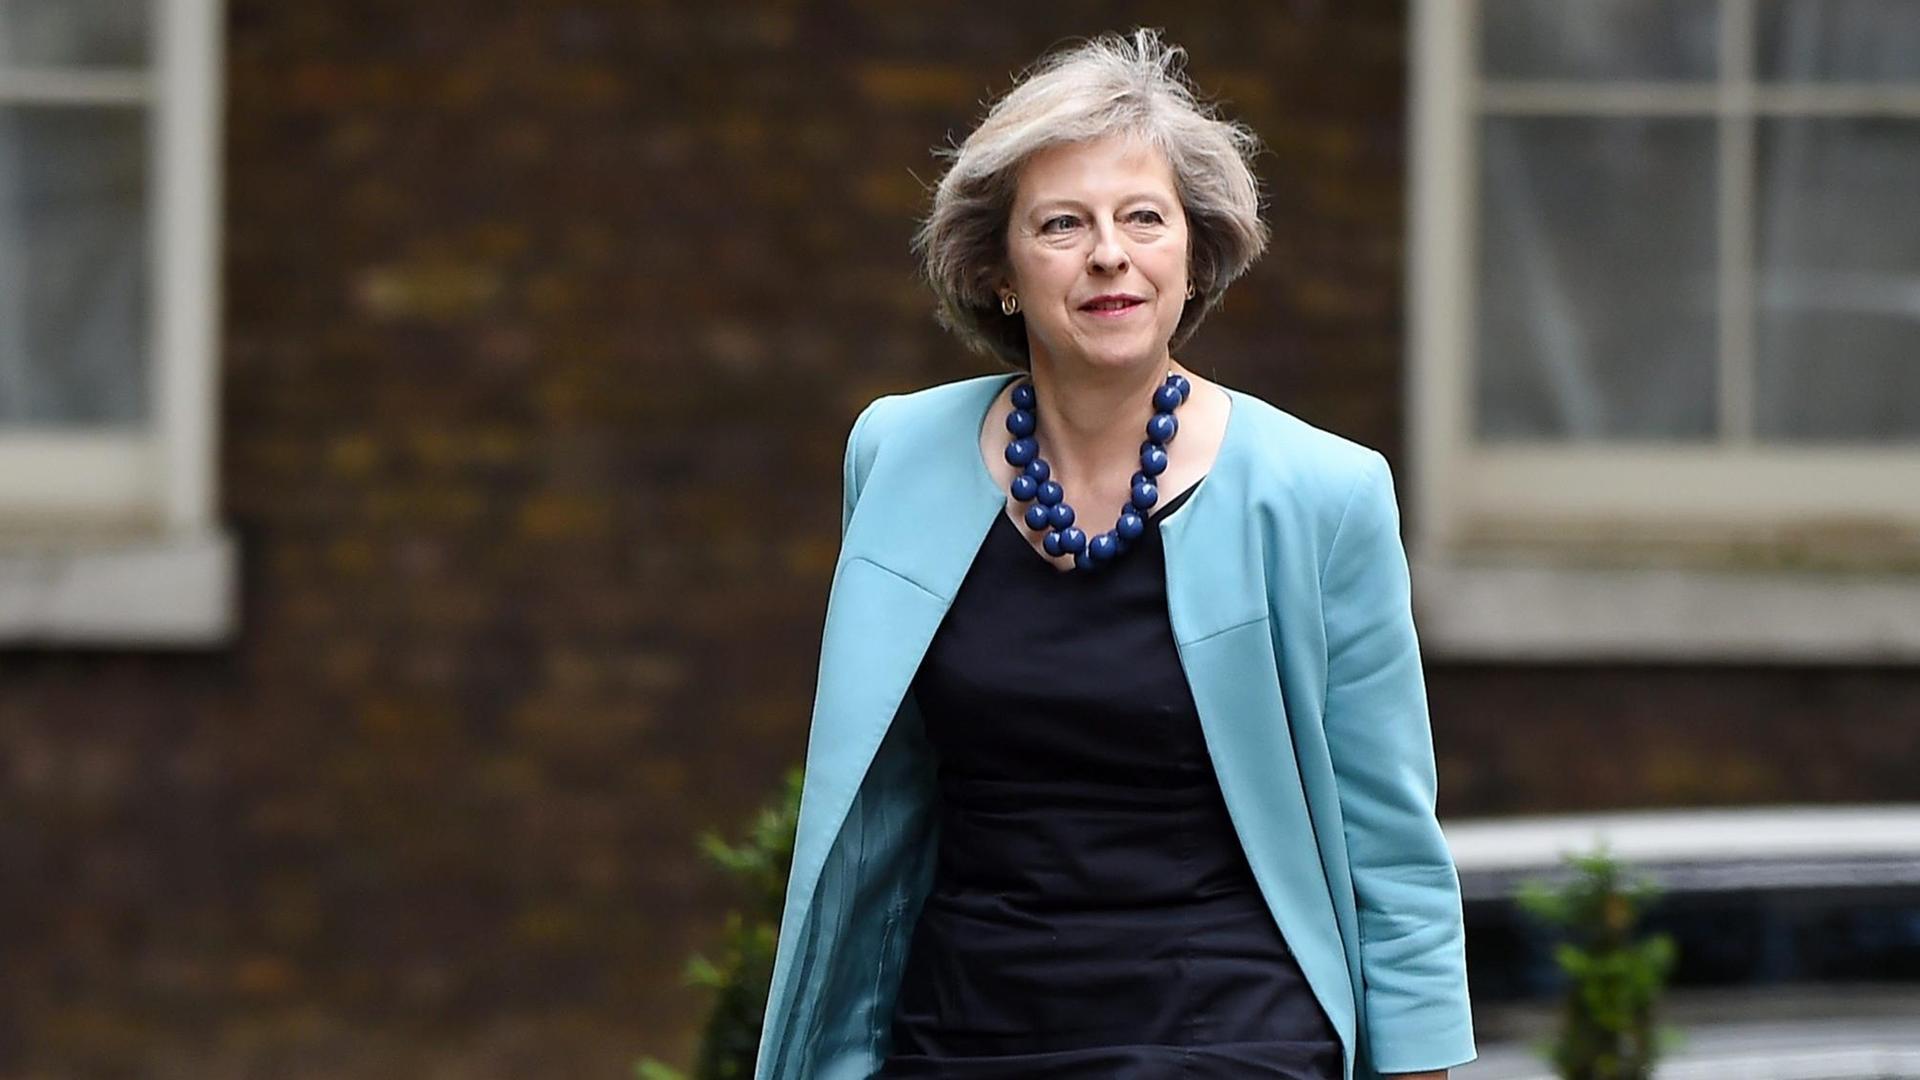 Die britische Innenministerin Theresa May erscheint am 27. Juni 2016 zu einer Kabinettssitzung.